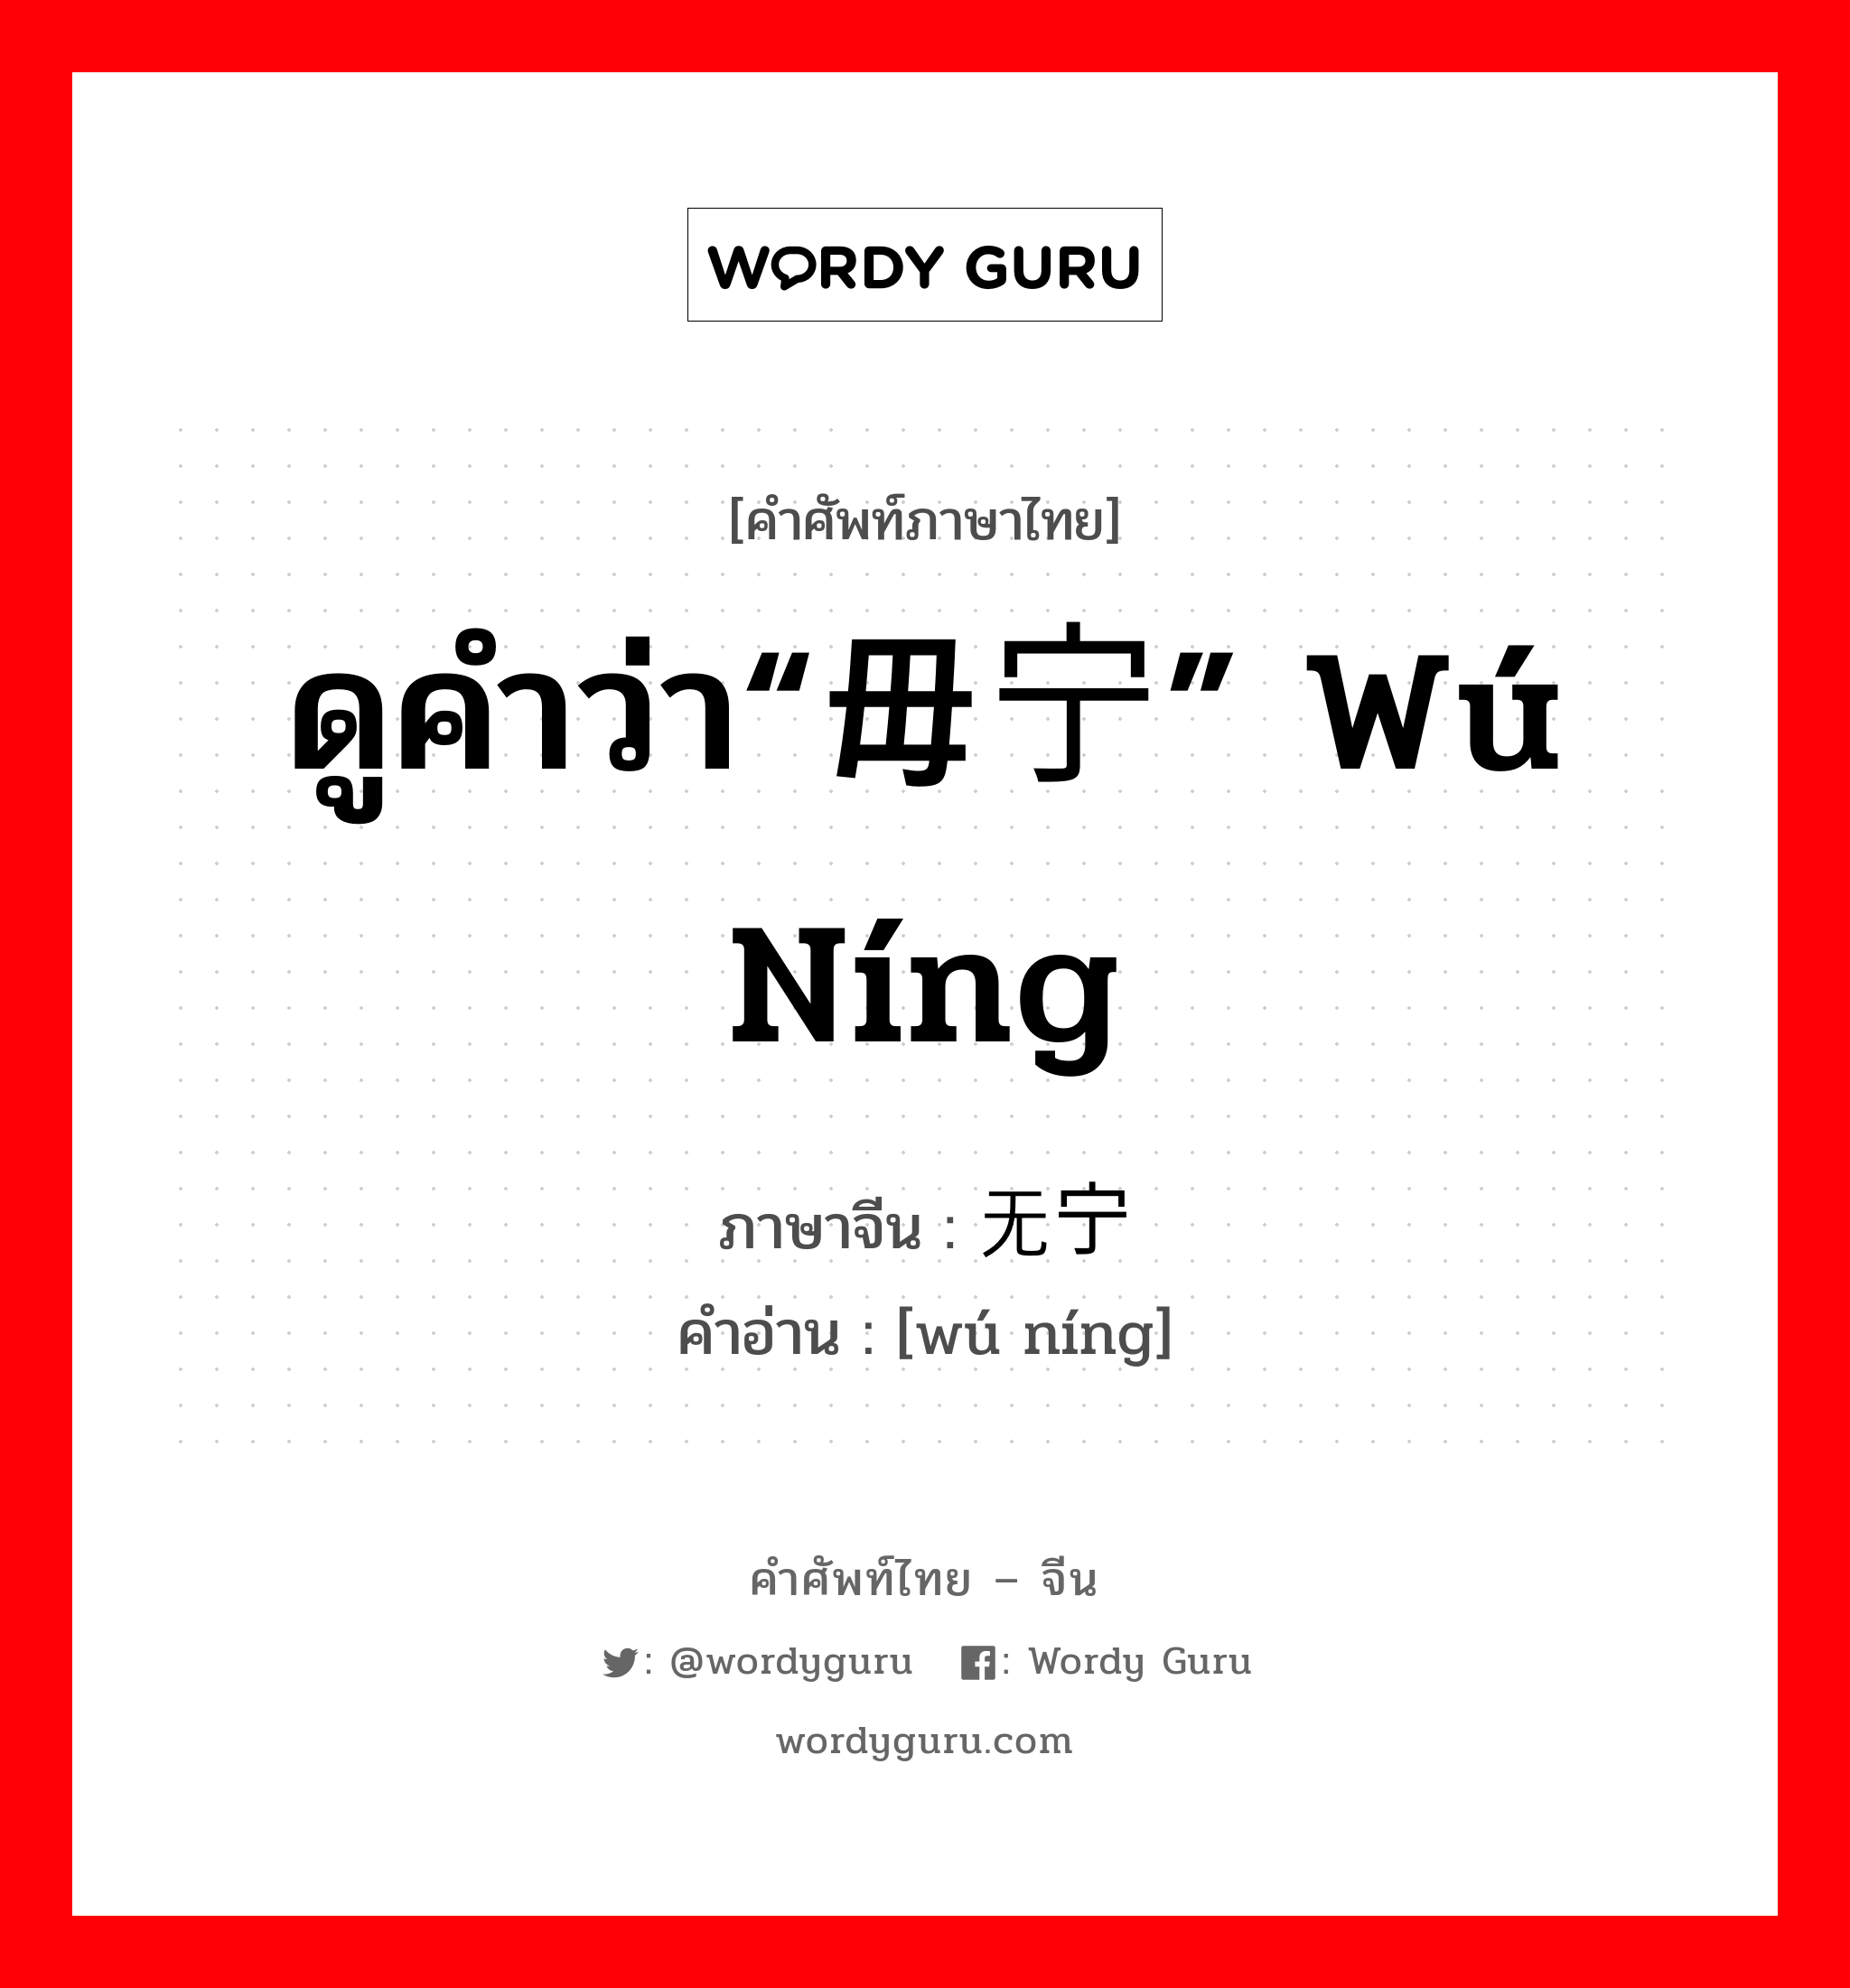 ดูคำว่า“毋宁” wú níng ภาษาจีนคืออะไร, คำศัพท์ภาษาไทย - จีน ดูคำว่า“毋宁” wú níng ภาษาจีน 无宁 คำอ่าน [wú níng]